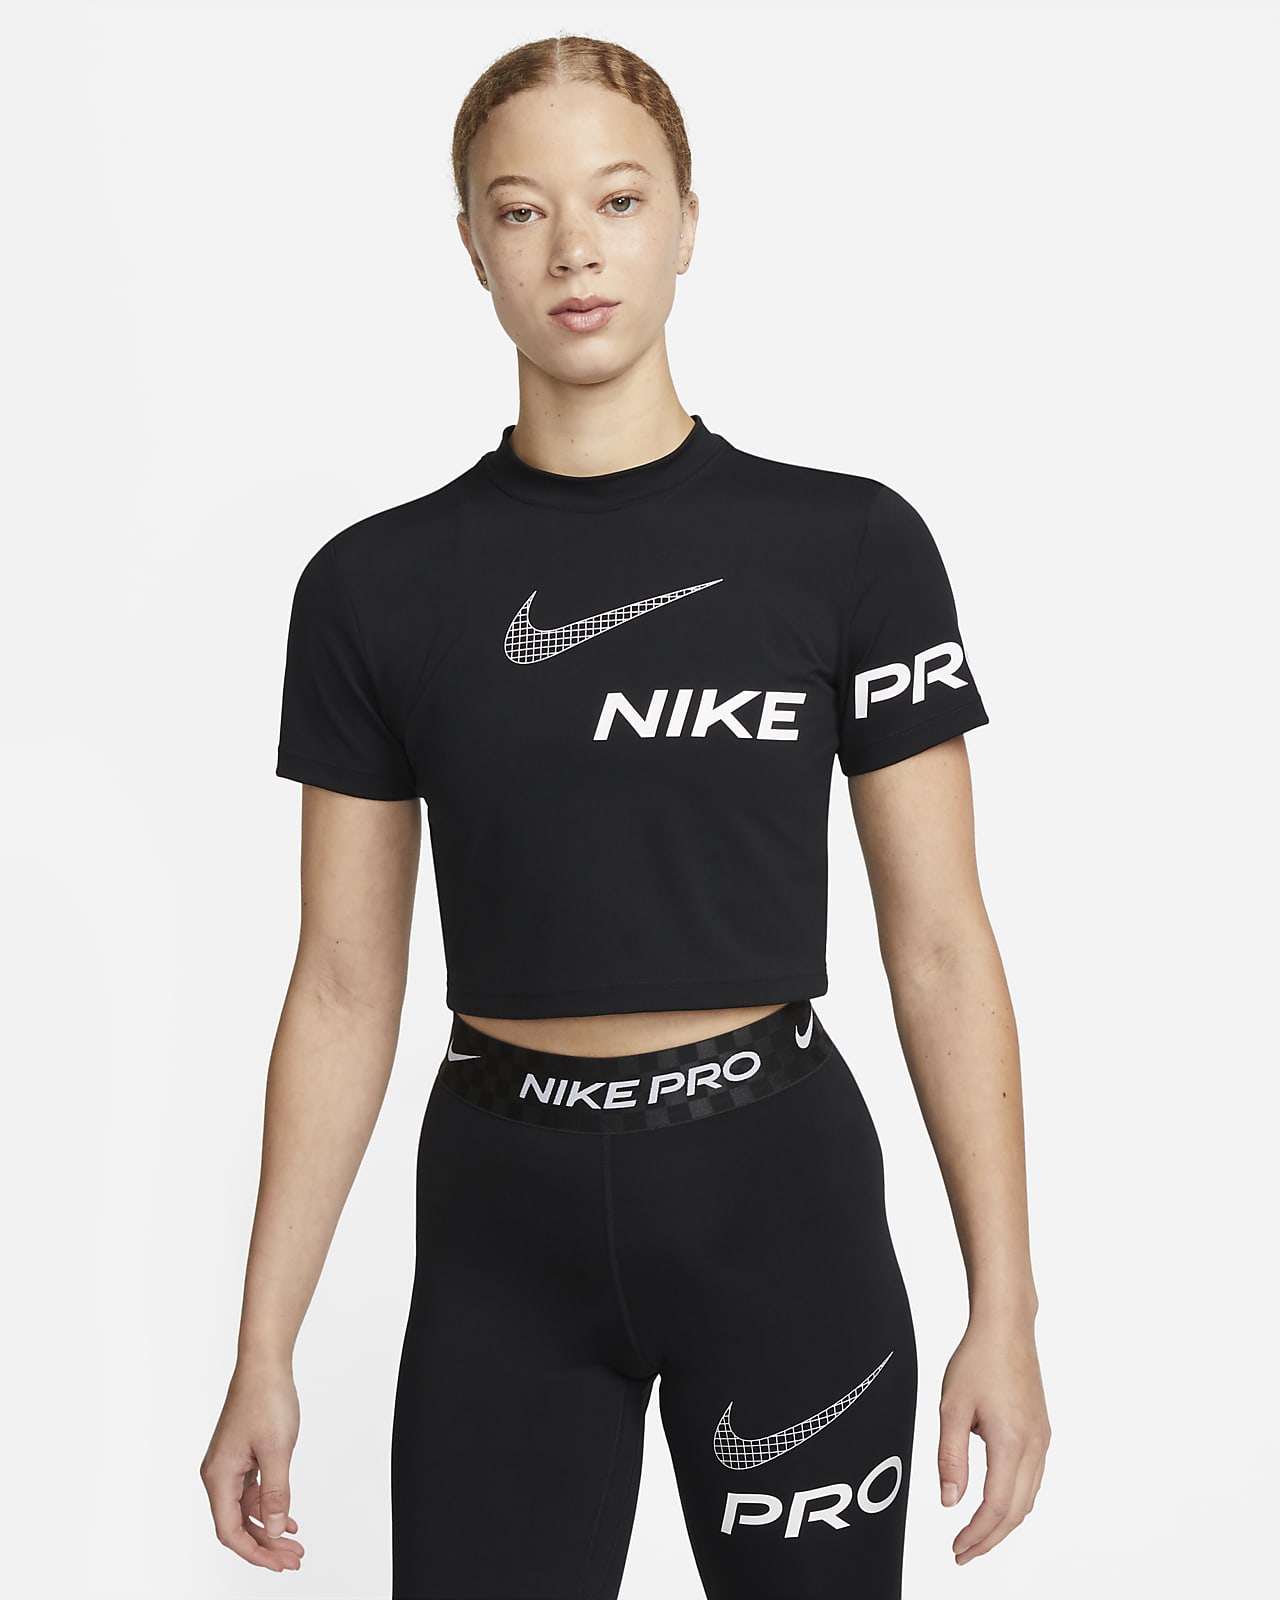 Nike Pro Dri-FIT rövid ujjú, rövid szabású, mintás női edzőfelső